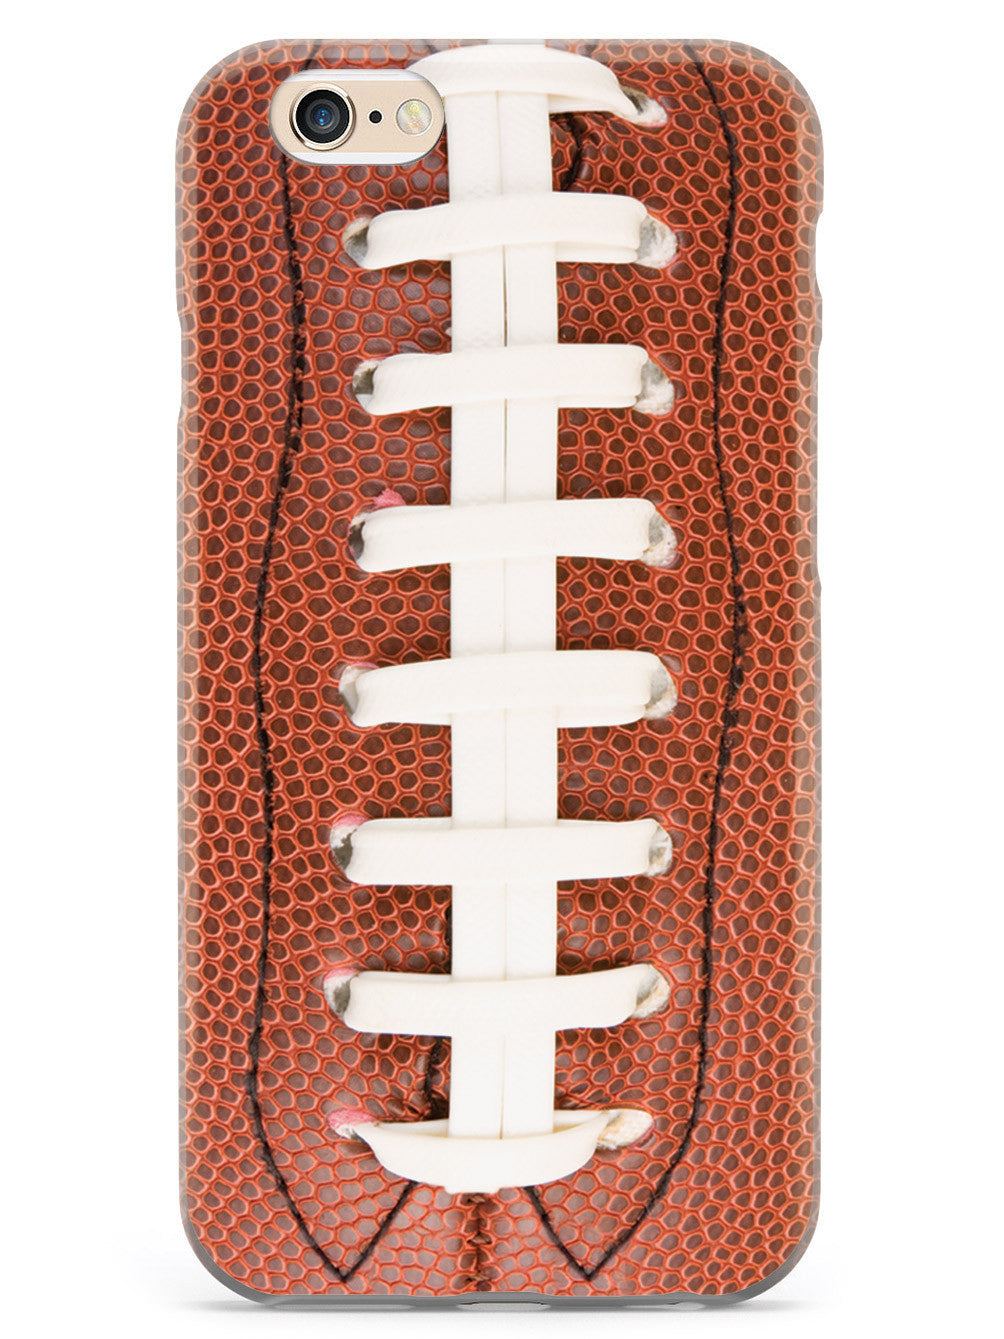 Straight On Football Texture Case